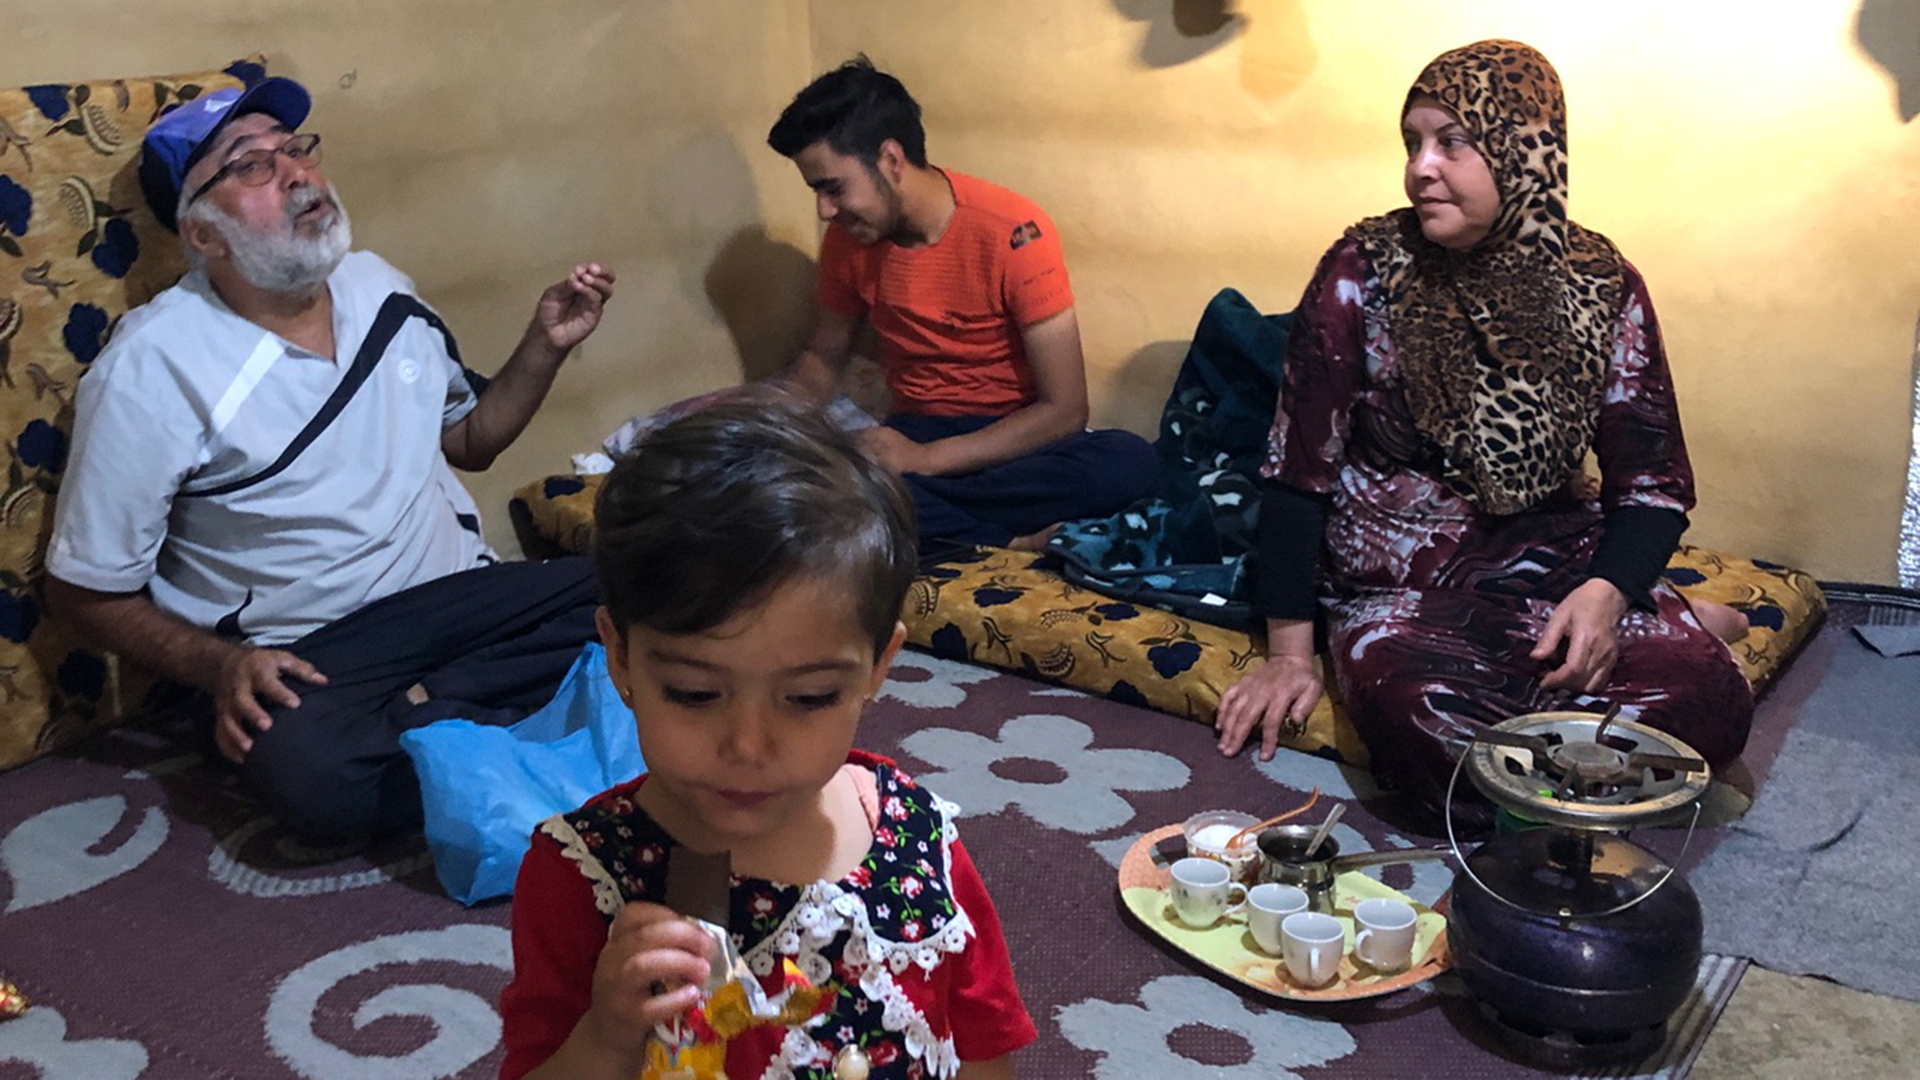 Eine syrische Flüchtlingsfamilie sitzt in ihrer Unterkunft beim Essen zusammen. | Daniel Hechler